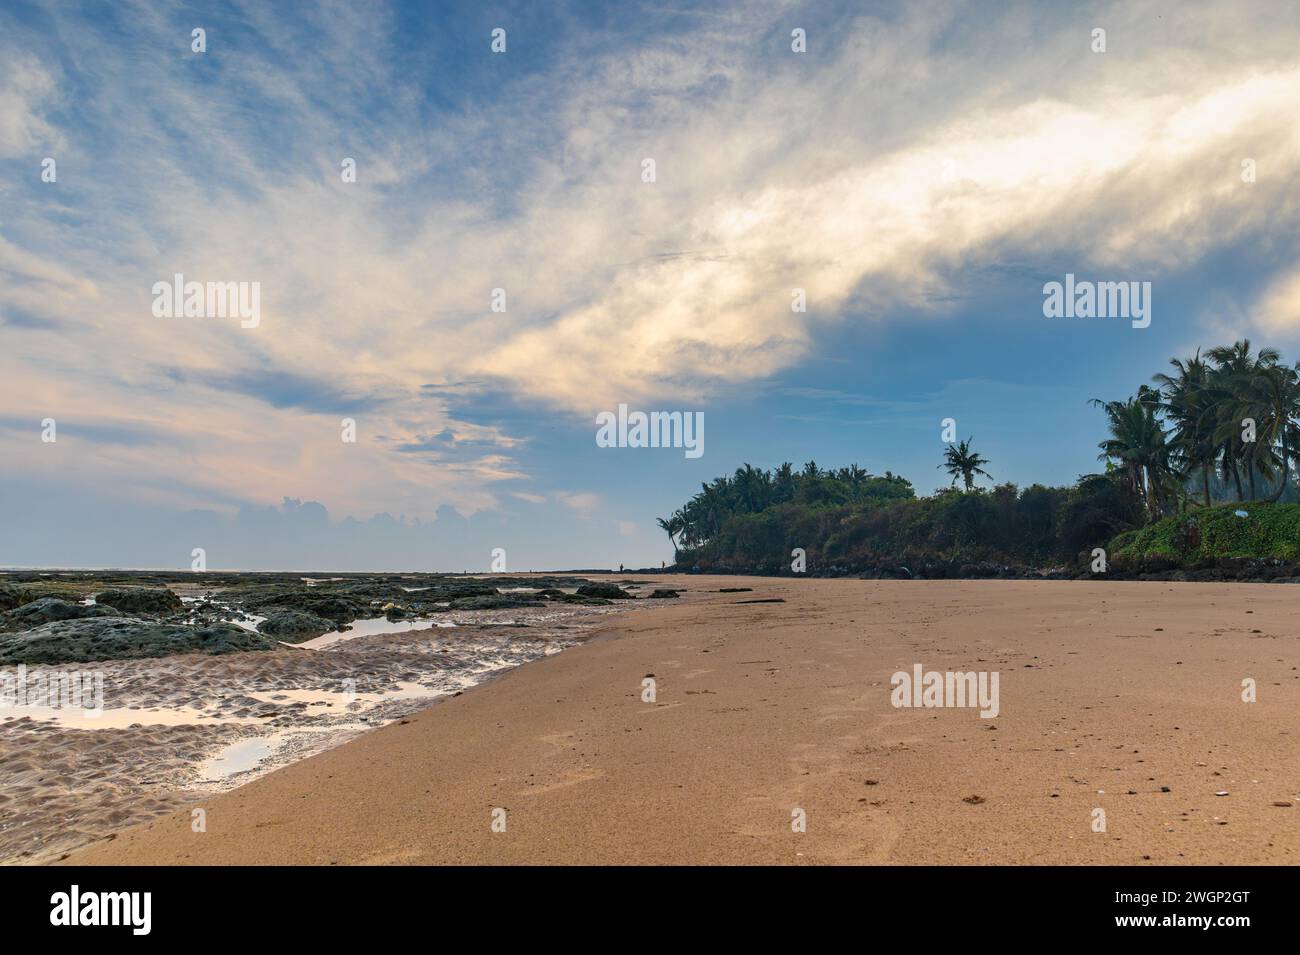 View of Ambunten Beach, Sumenep, Madura Island in Indonesia Stock Photo